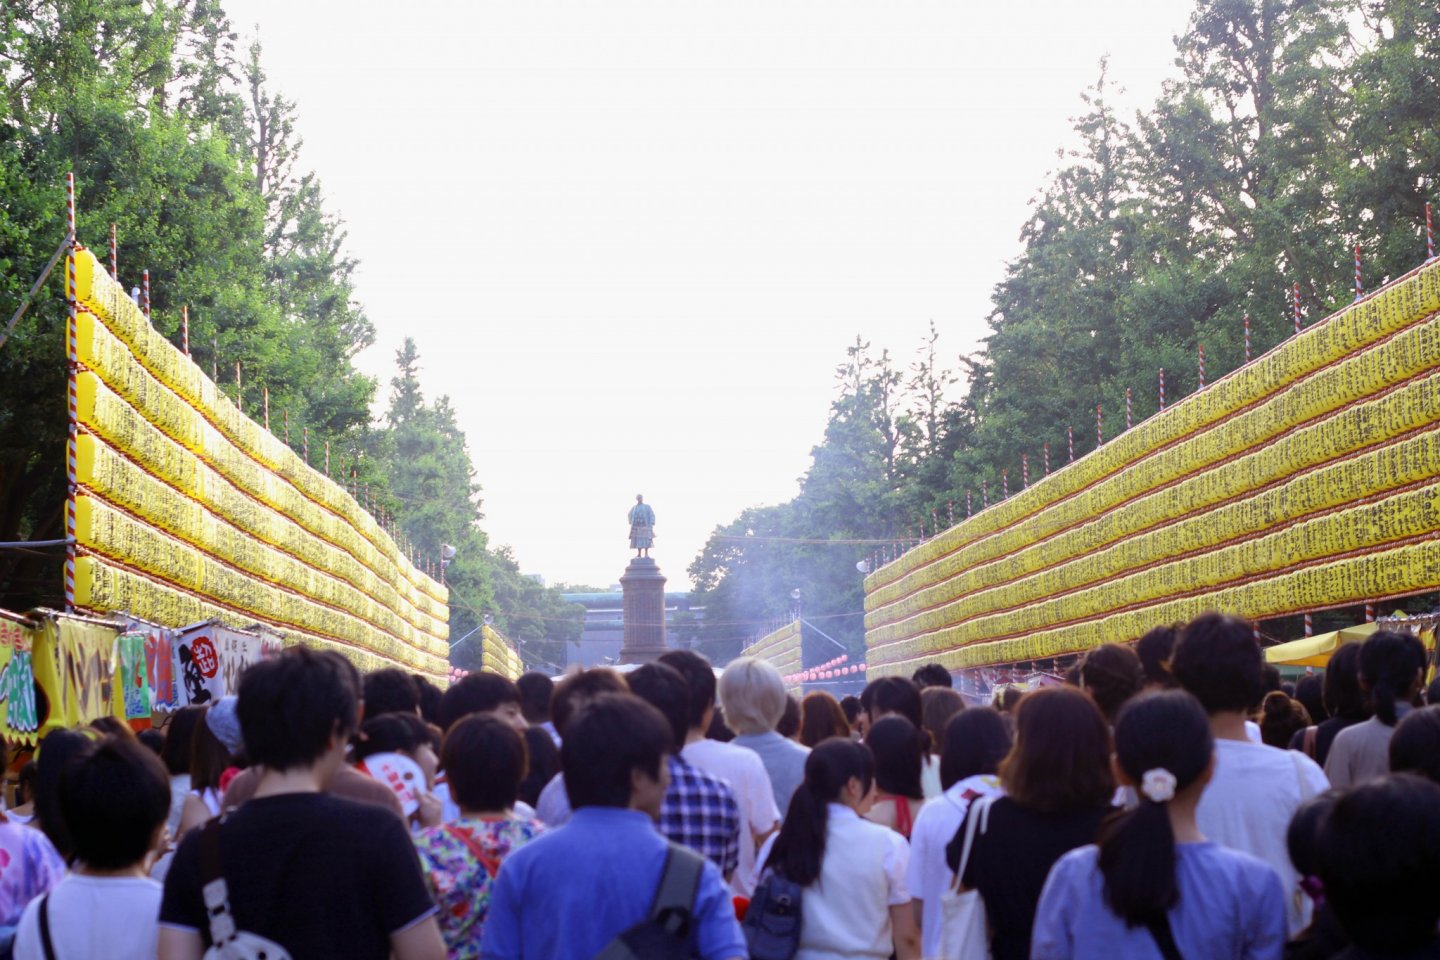 Đoàn người tham dự lễ hội Mitama